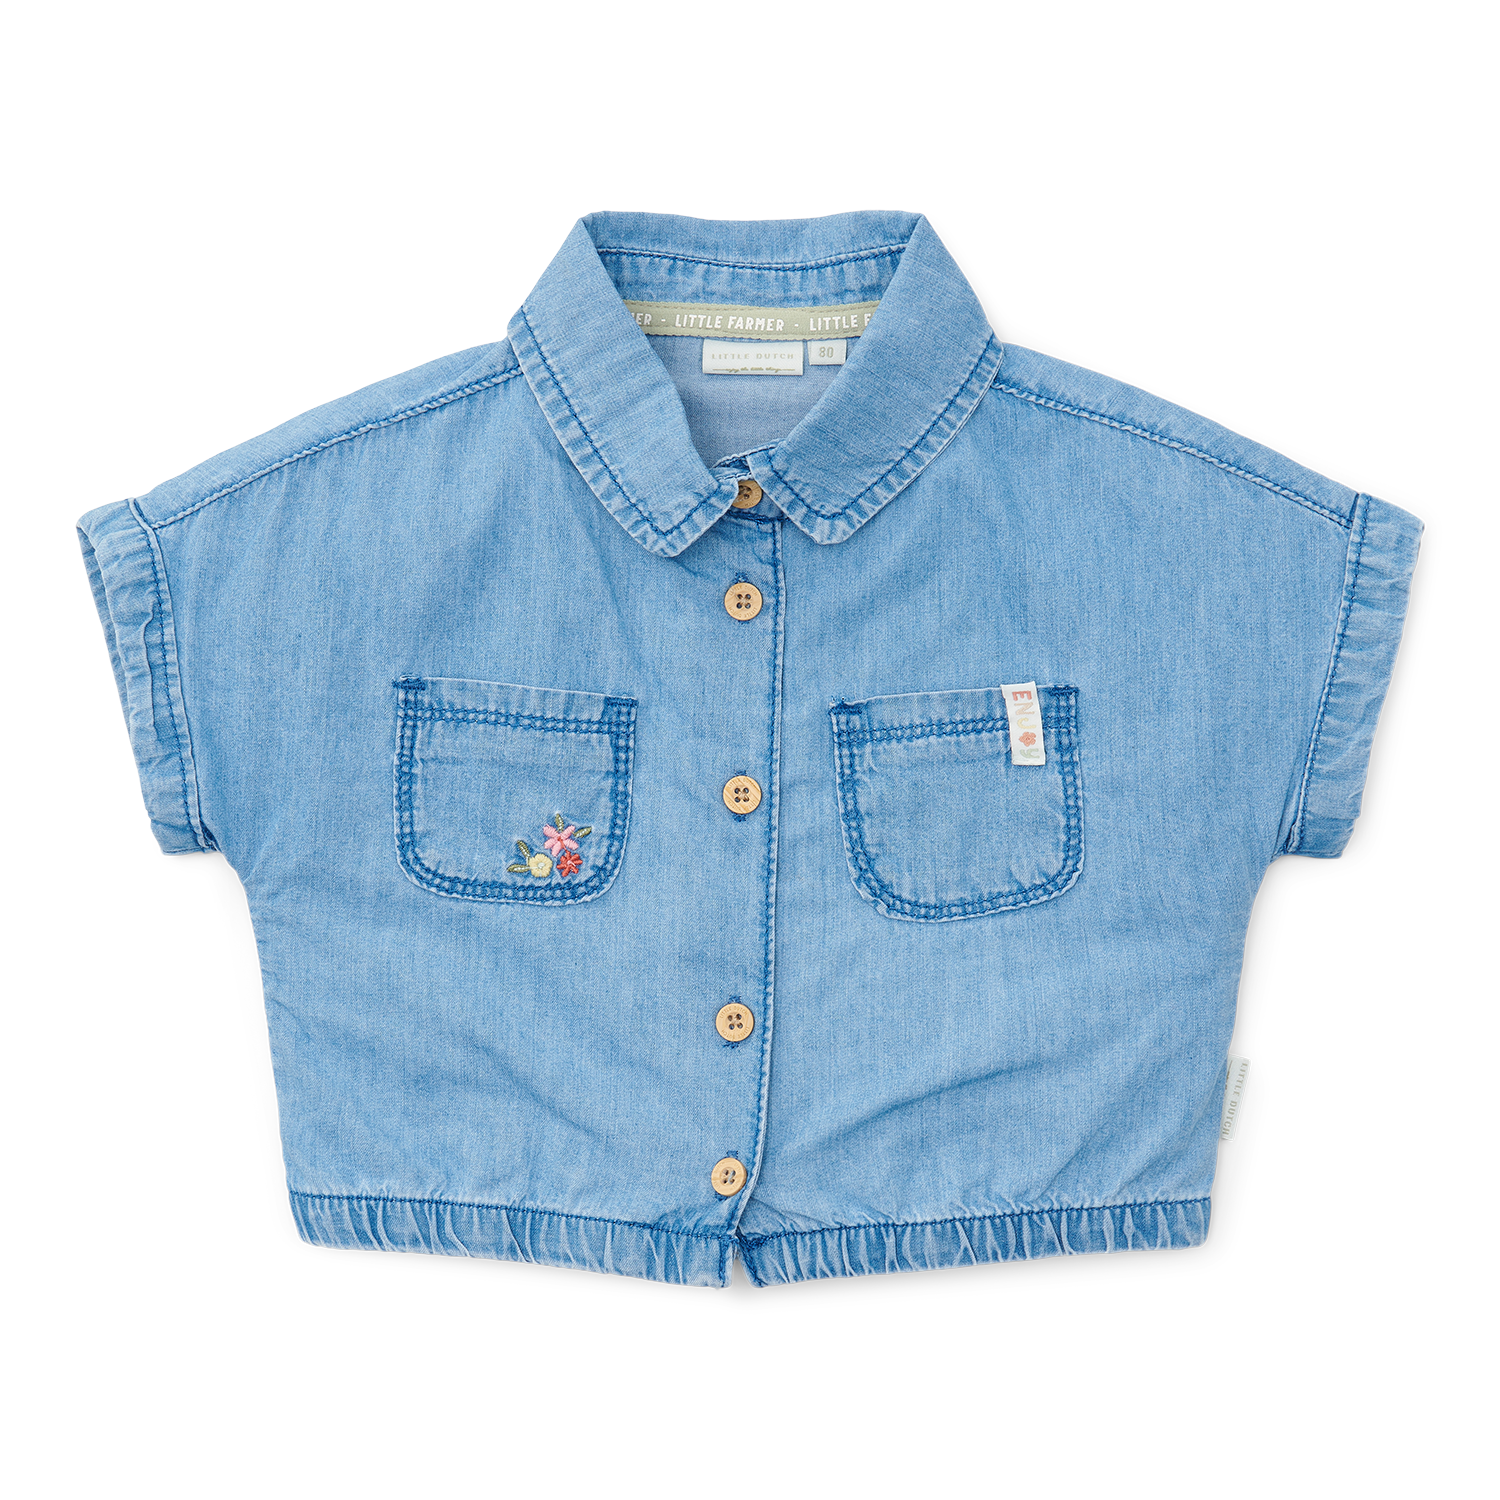 T-Shirt / Bluse Denim Little Farm jeans (Gr. 92)